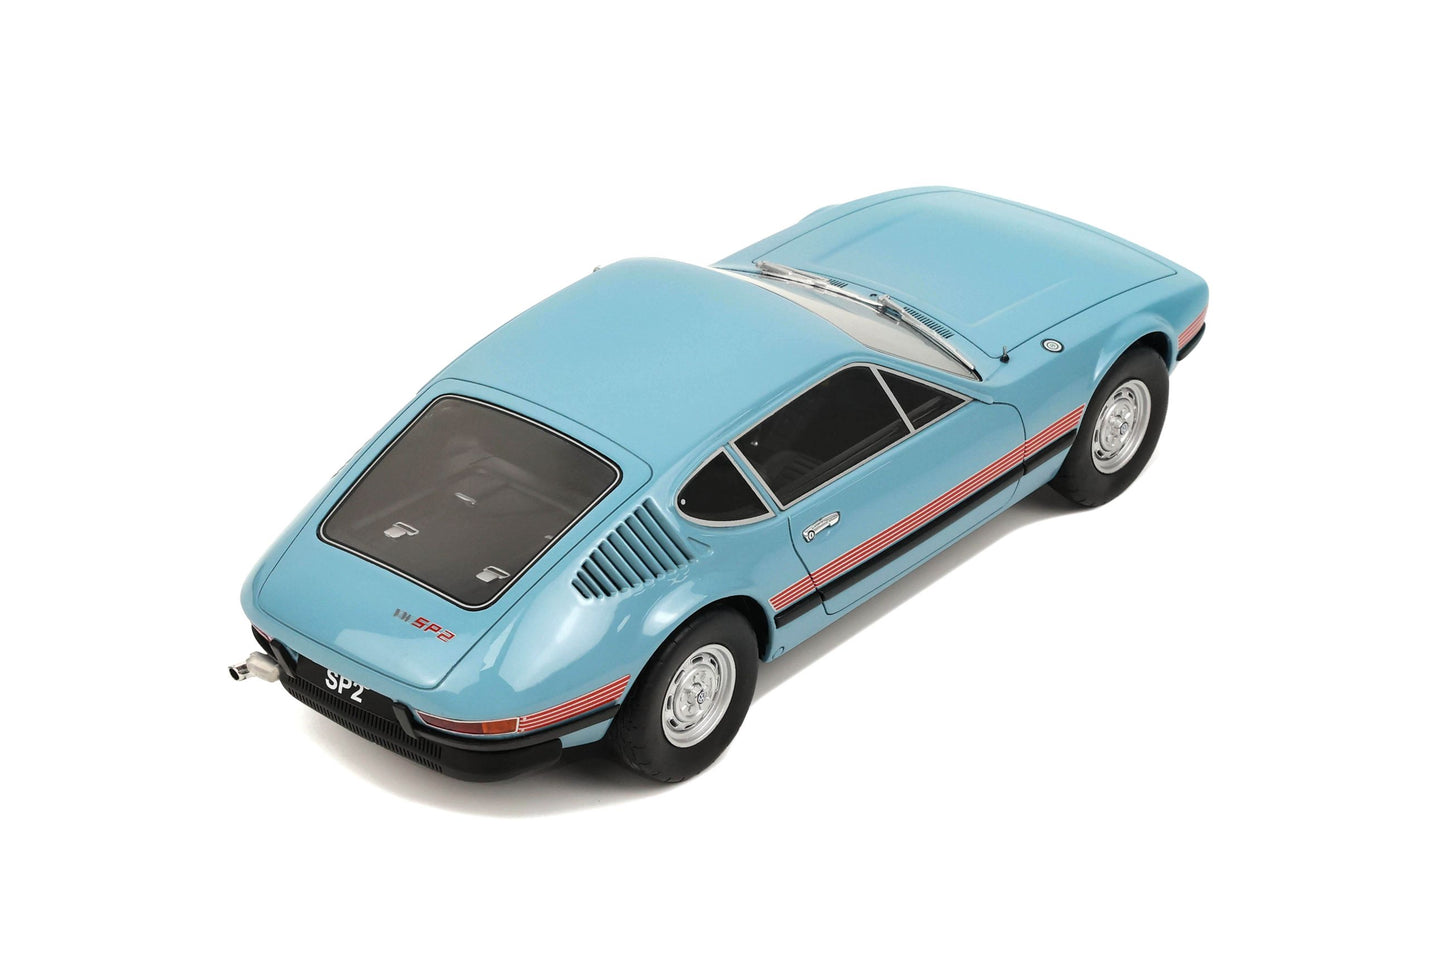 OttOmobile - Volkswagen SP2 (1972) (Niagara Blue) 1:18 Scale Scale Model